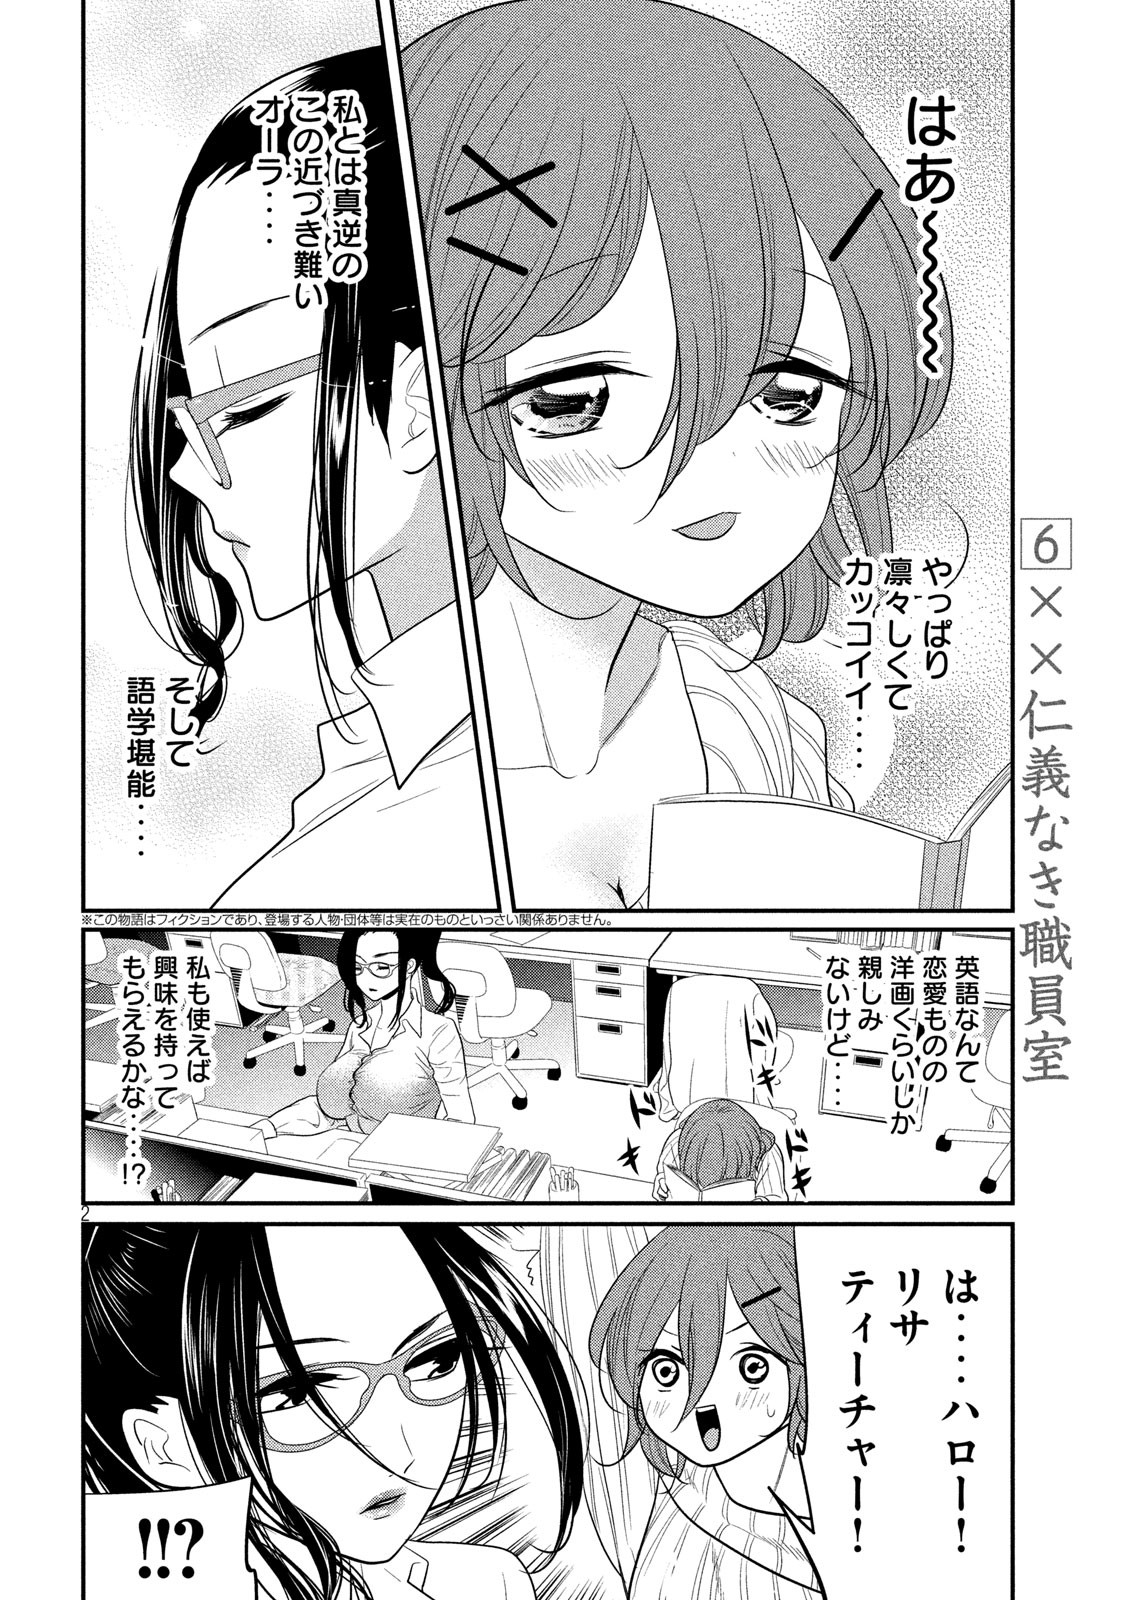 Eigo ×× Sensei - Chapter 6 - Page 2